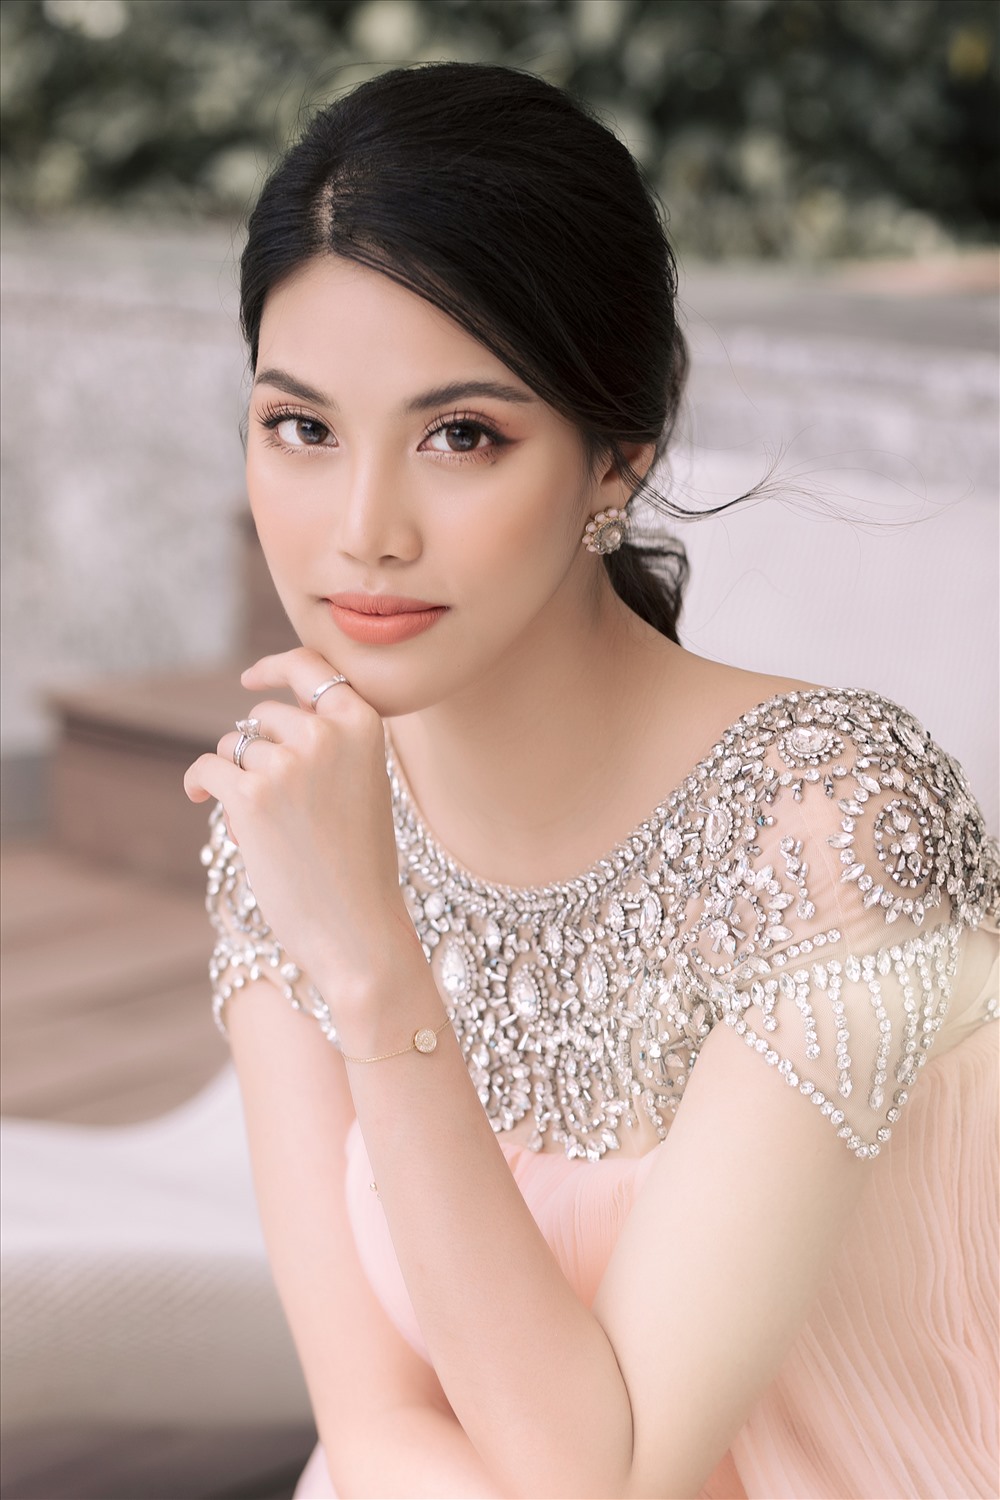 Siêu mẫu Lan Khuê sẽ là người “cầm cân nảy mực” tại cuộc thi “Hoa hậu Sắc đẹp quốc tế 2020“. Ảnh: T. L.